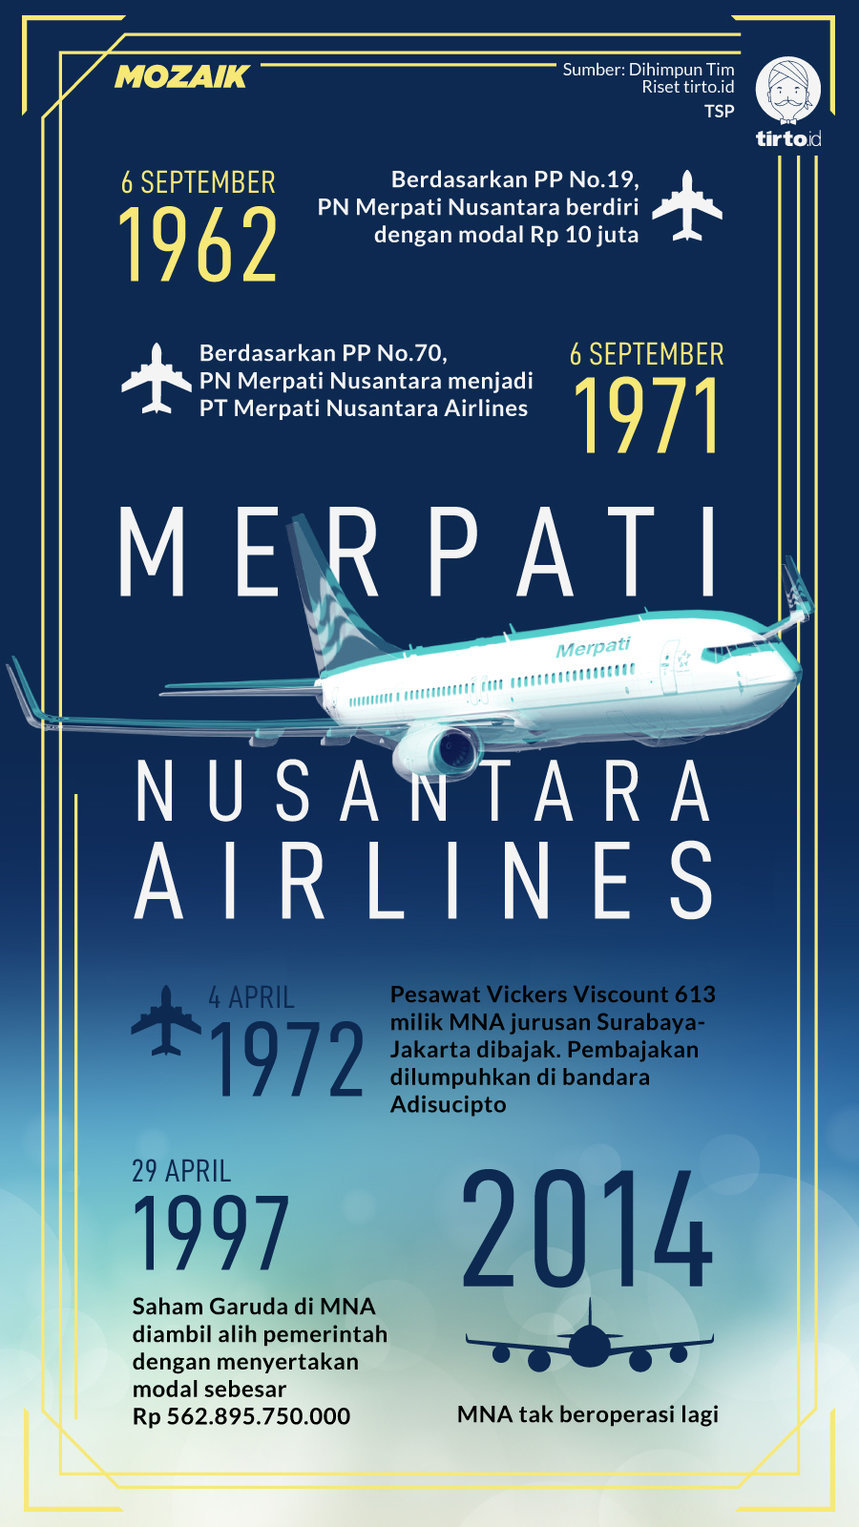 infografik mozaik merpati nusantara airlines